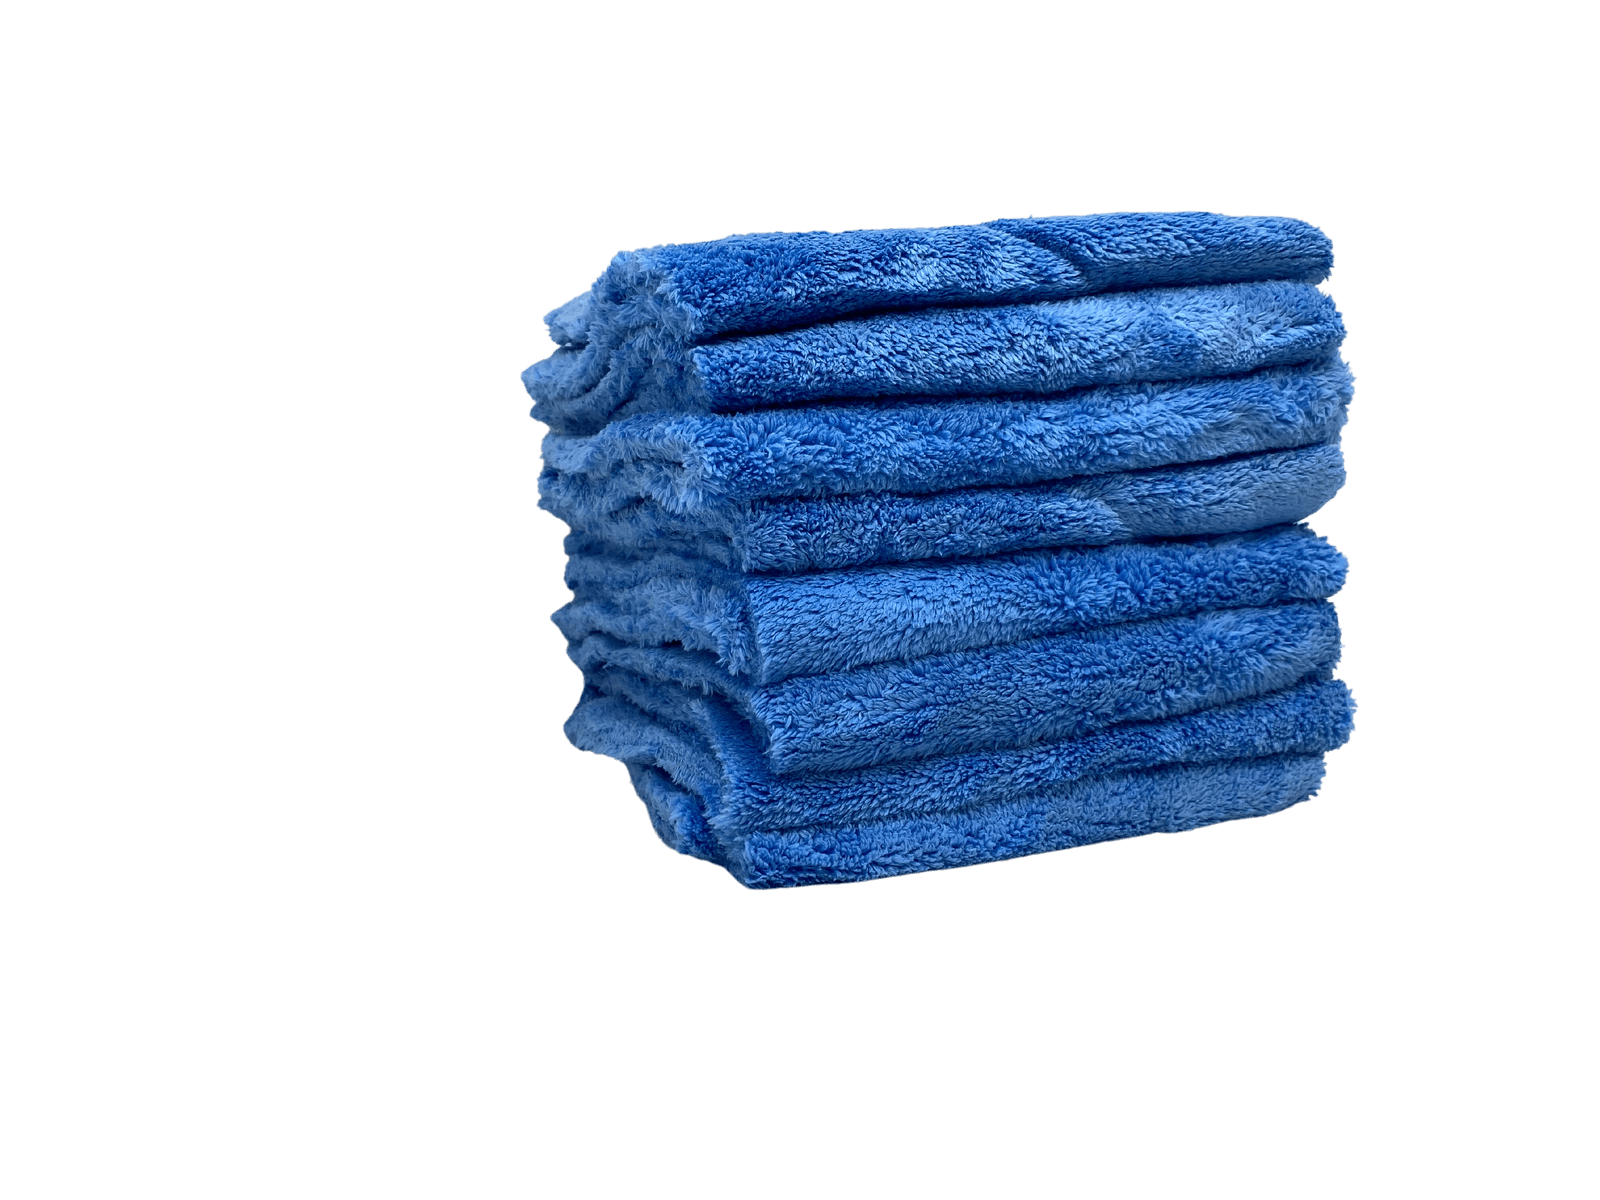 The Eaglet 500 Microfiber Detailing Towel